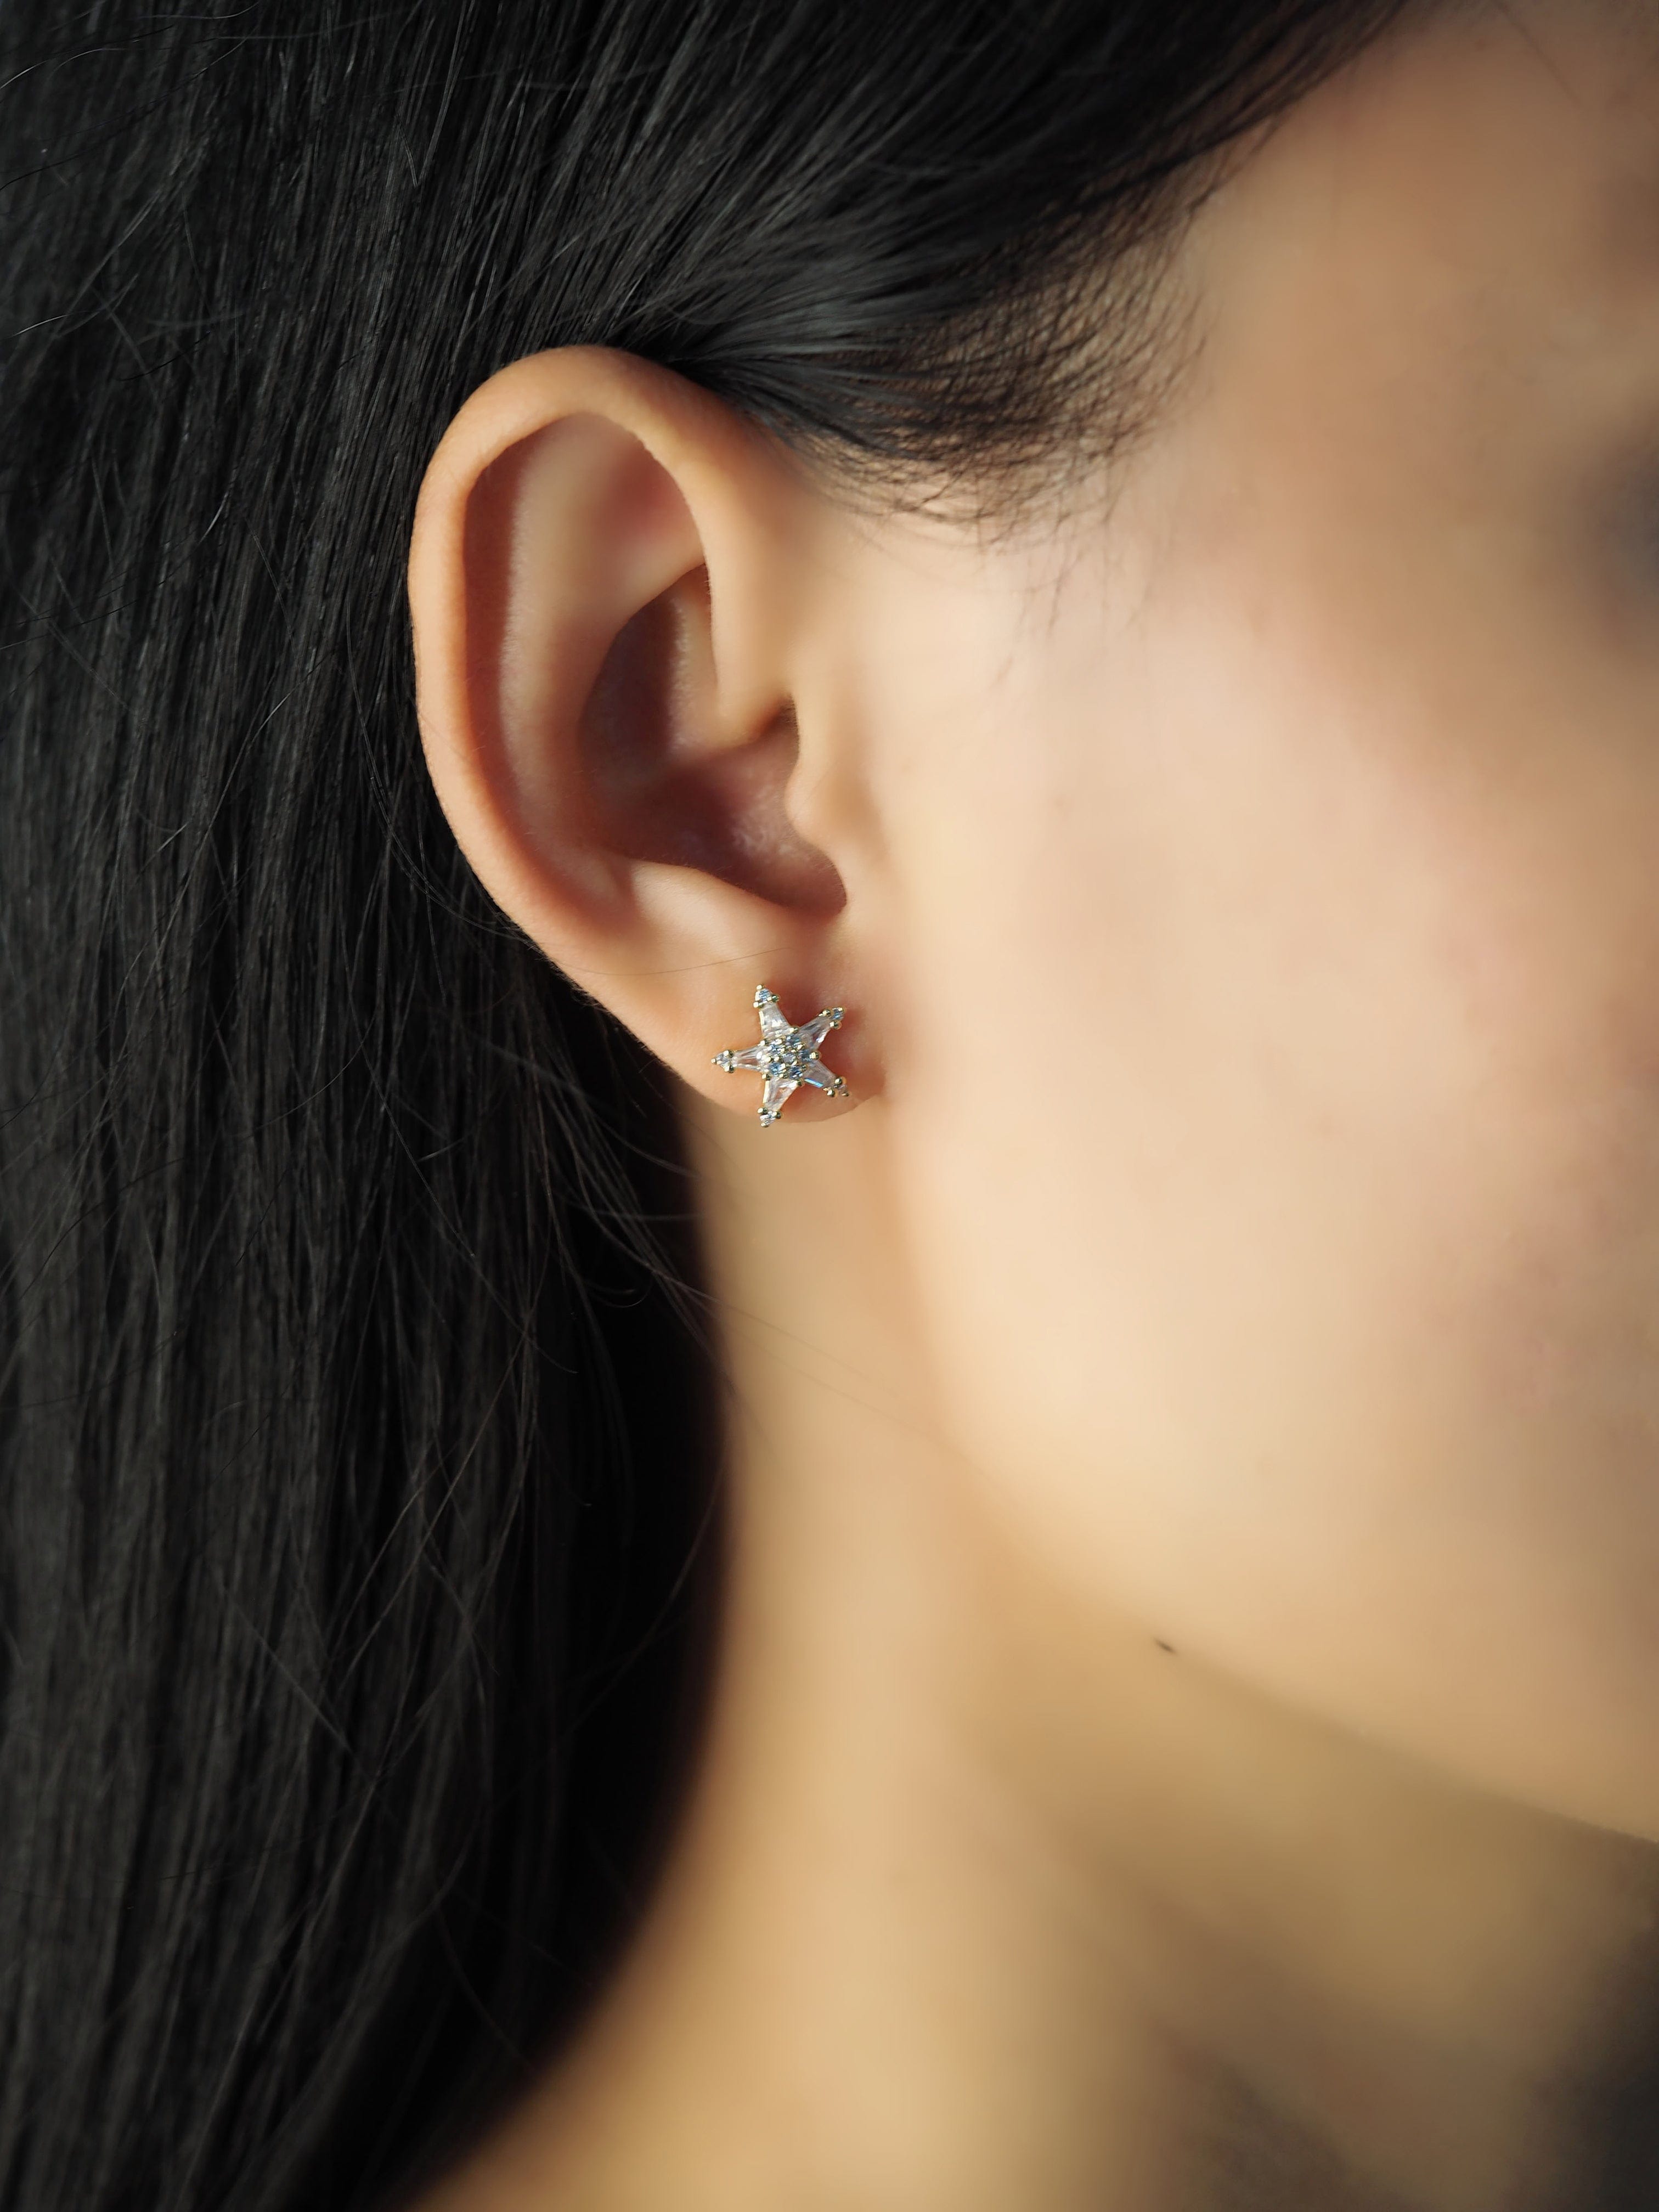 TAI JEWELRY Earrings Star Baguette Studs